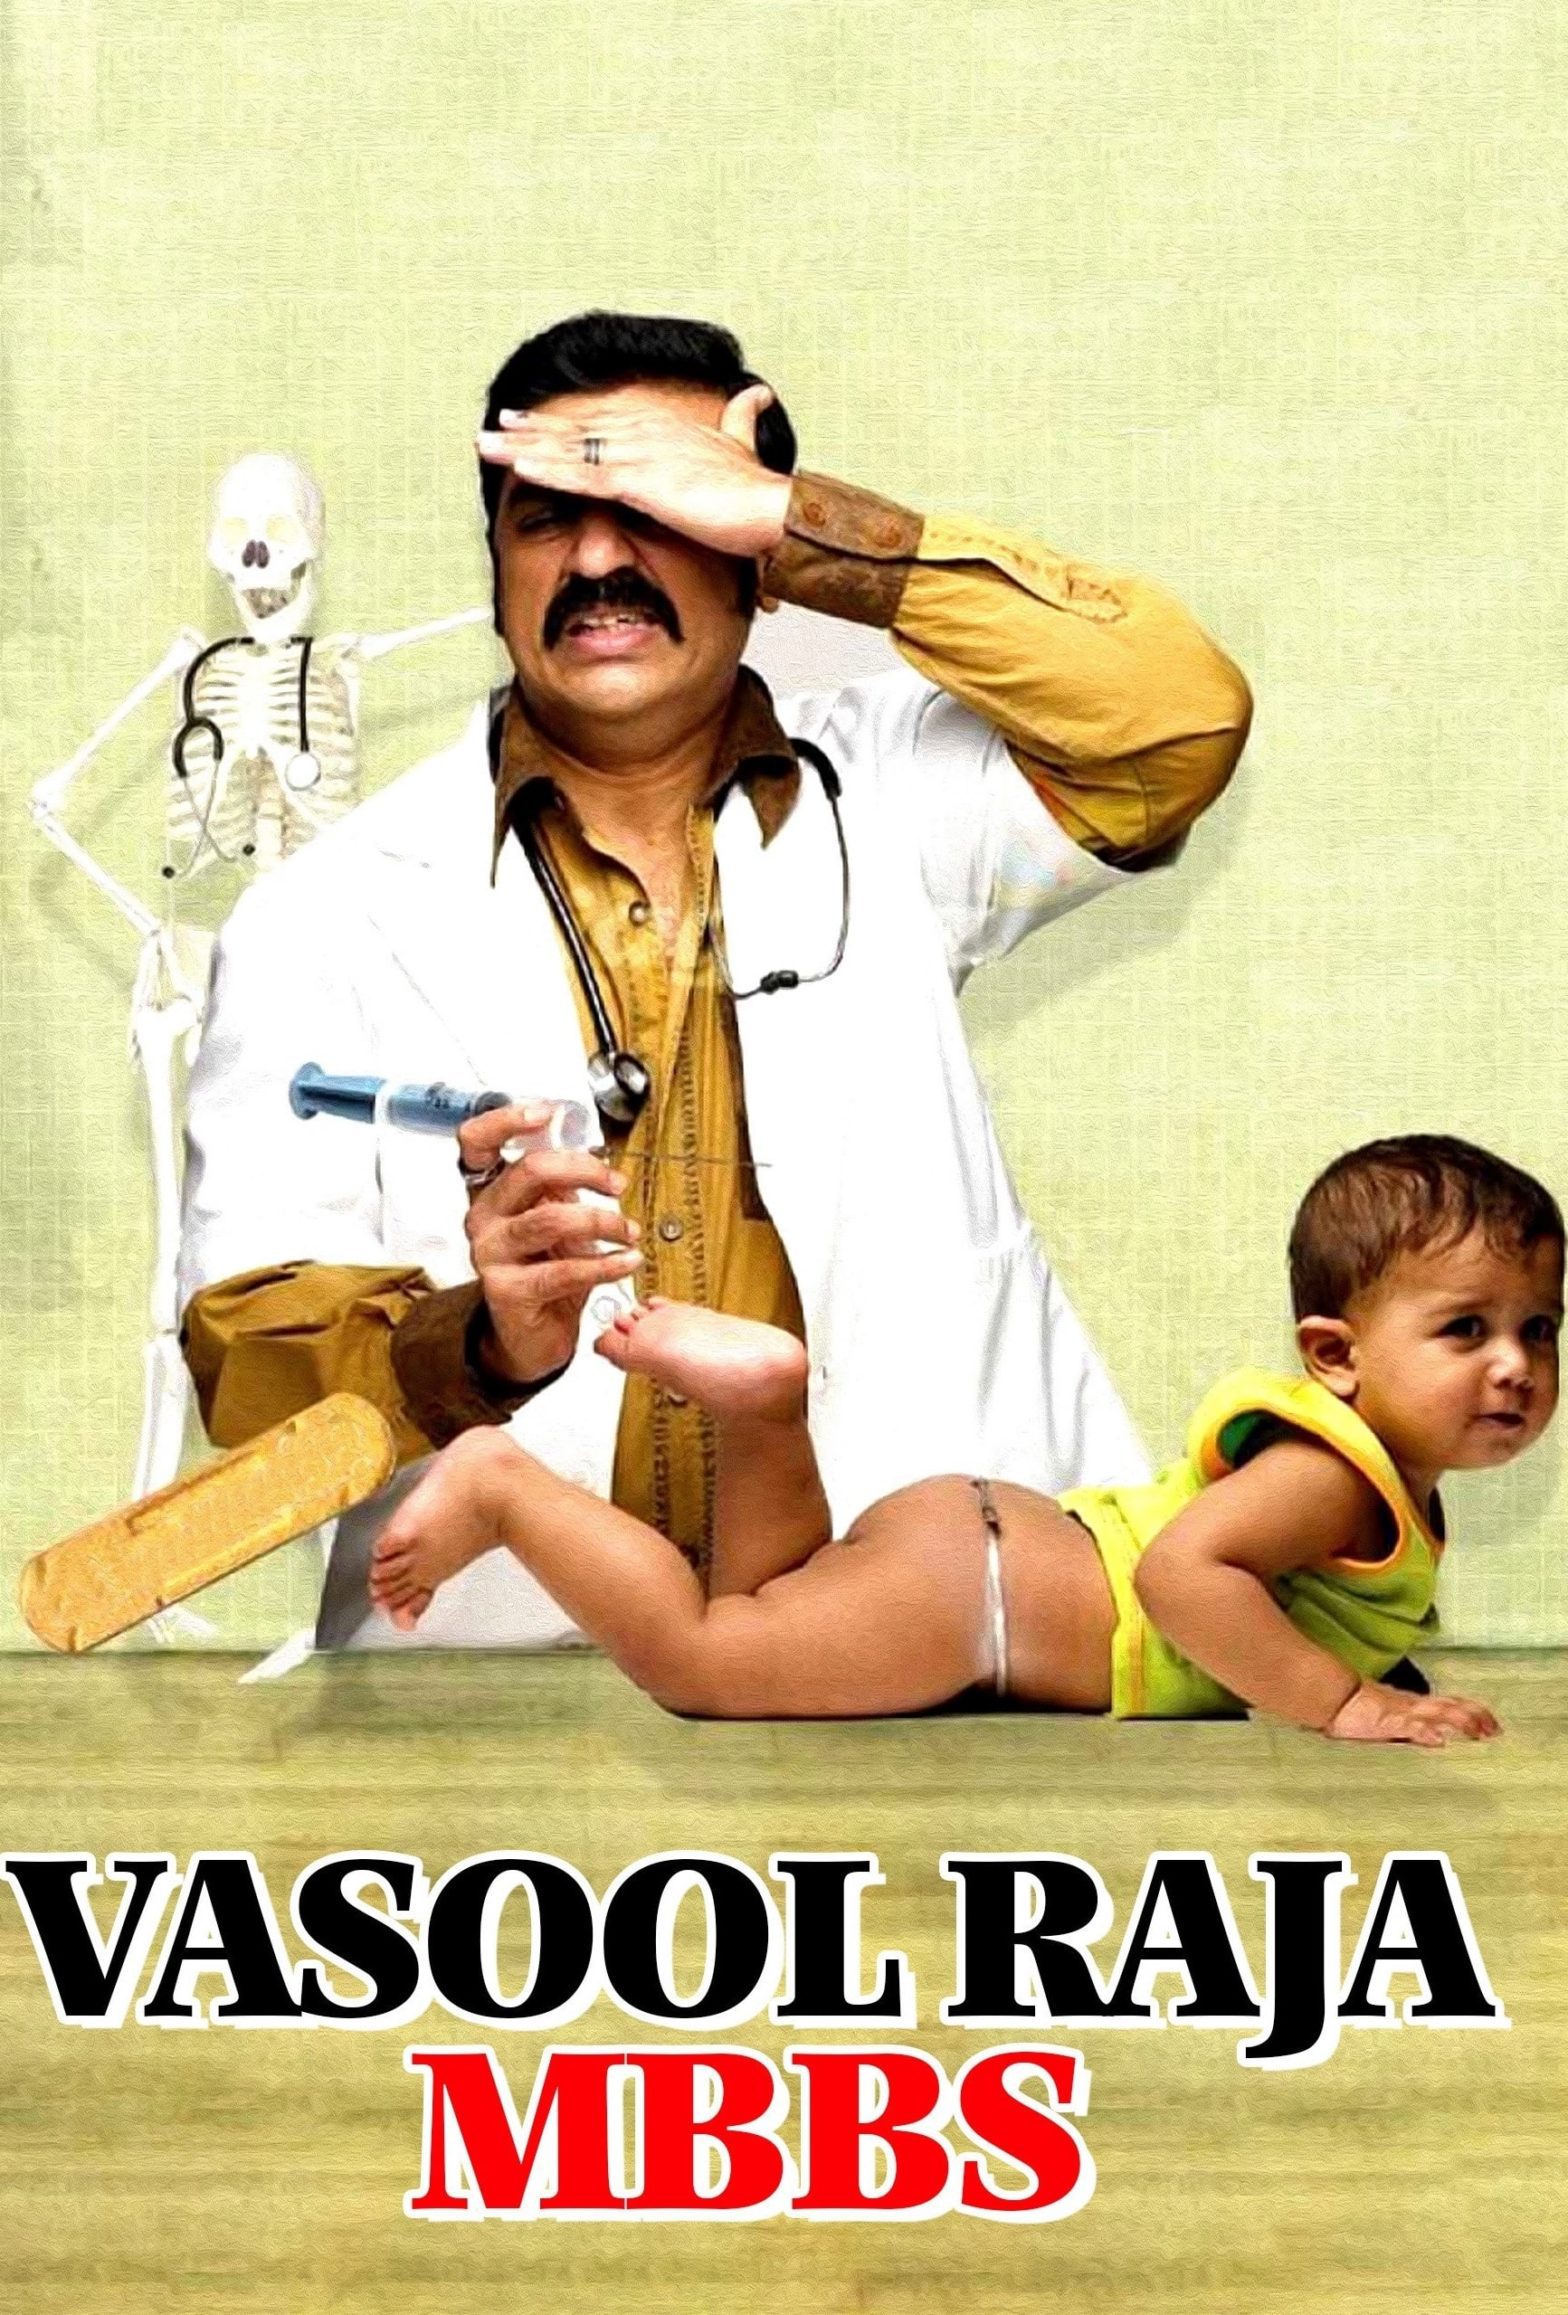 Poster for the movie "Vasool Raja MBBS"